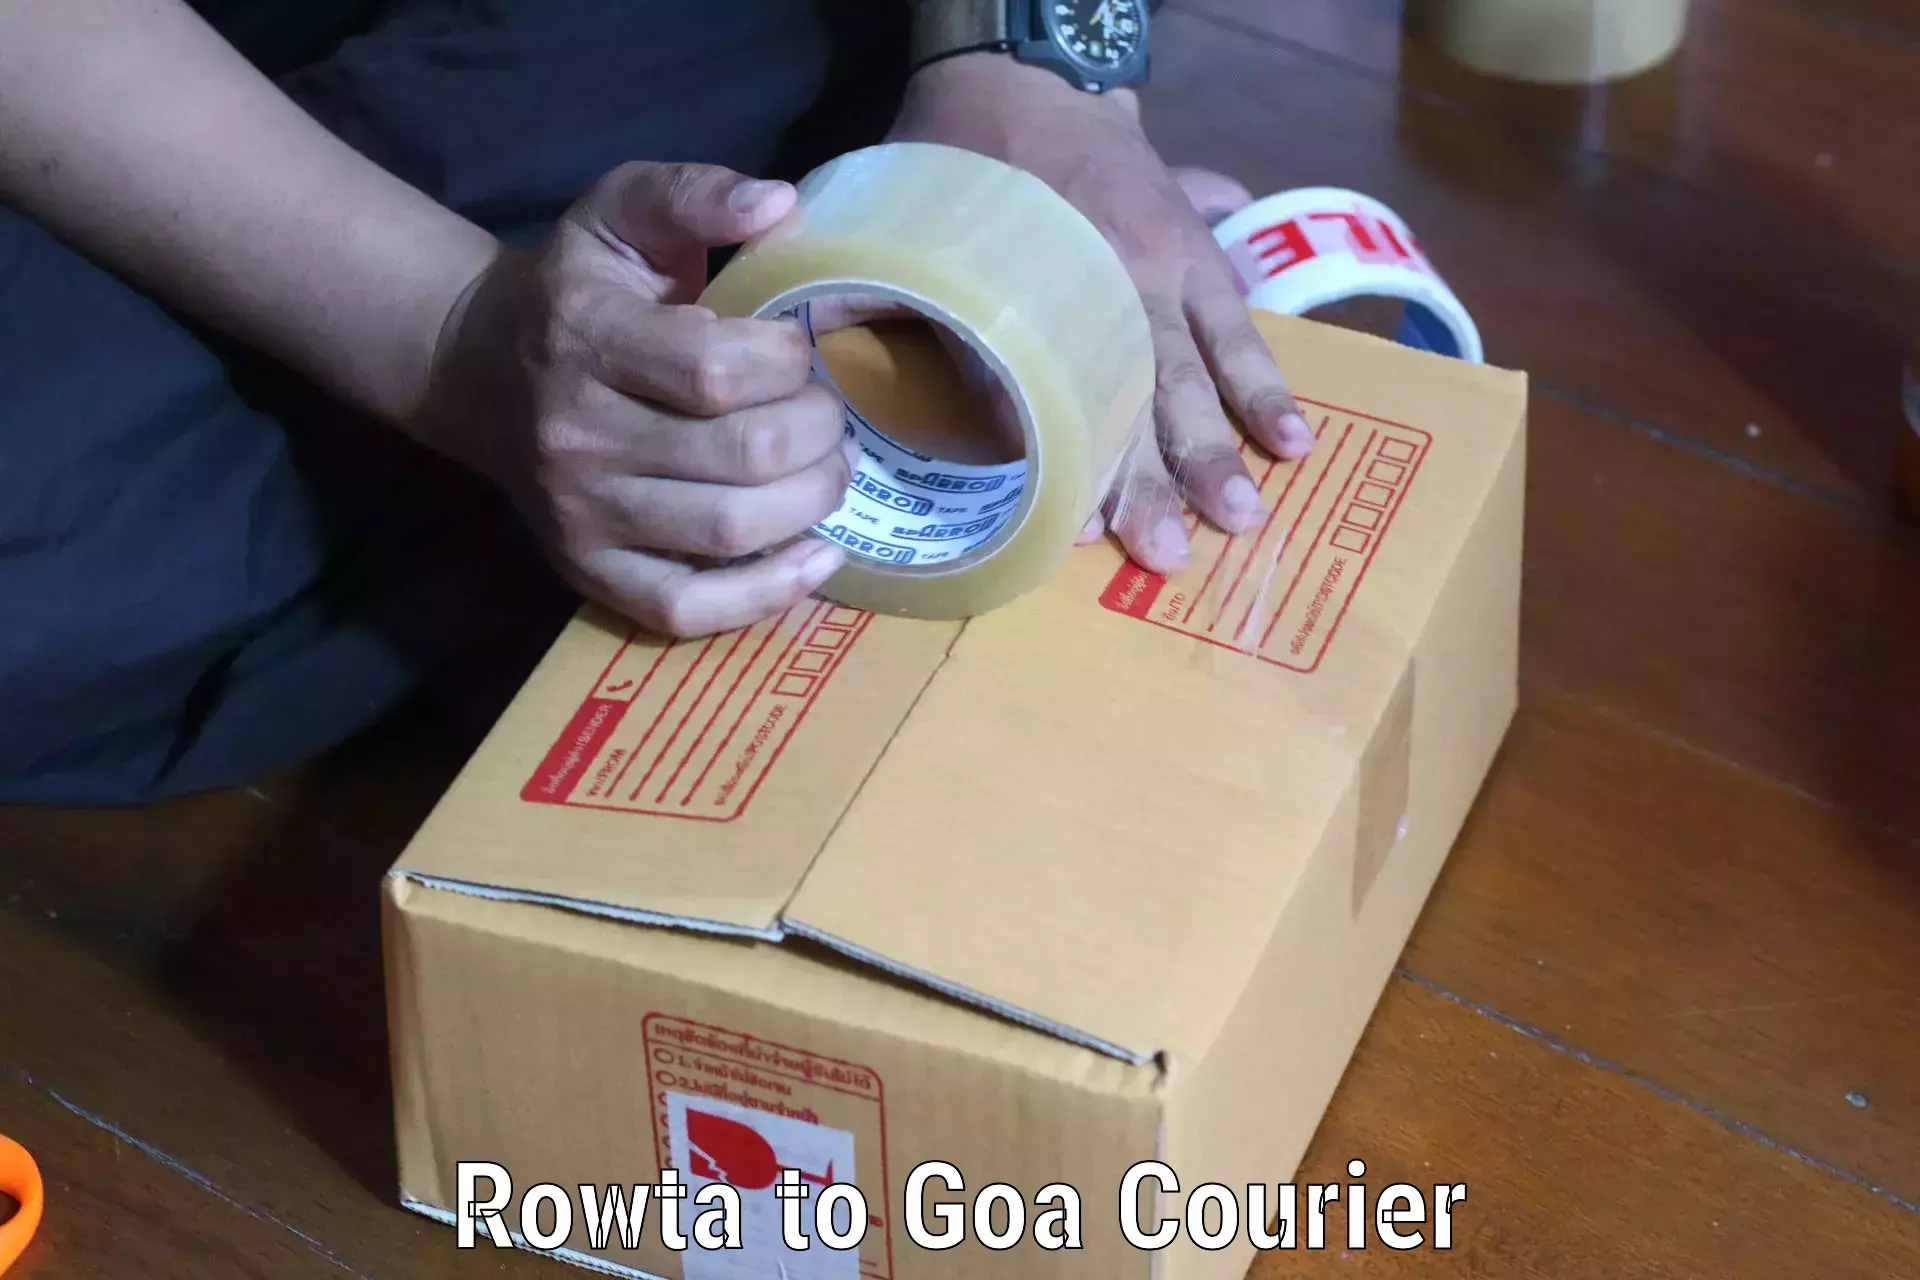 Premium courier solutions Rowta to Goa University